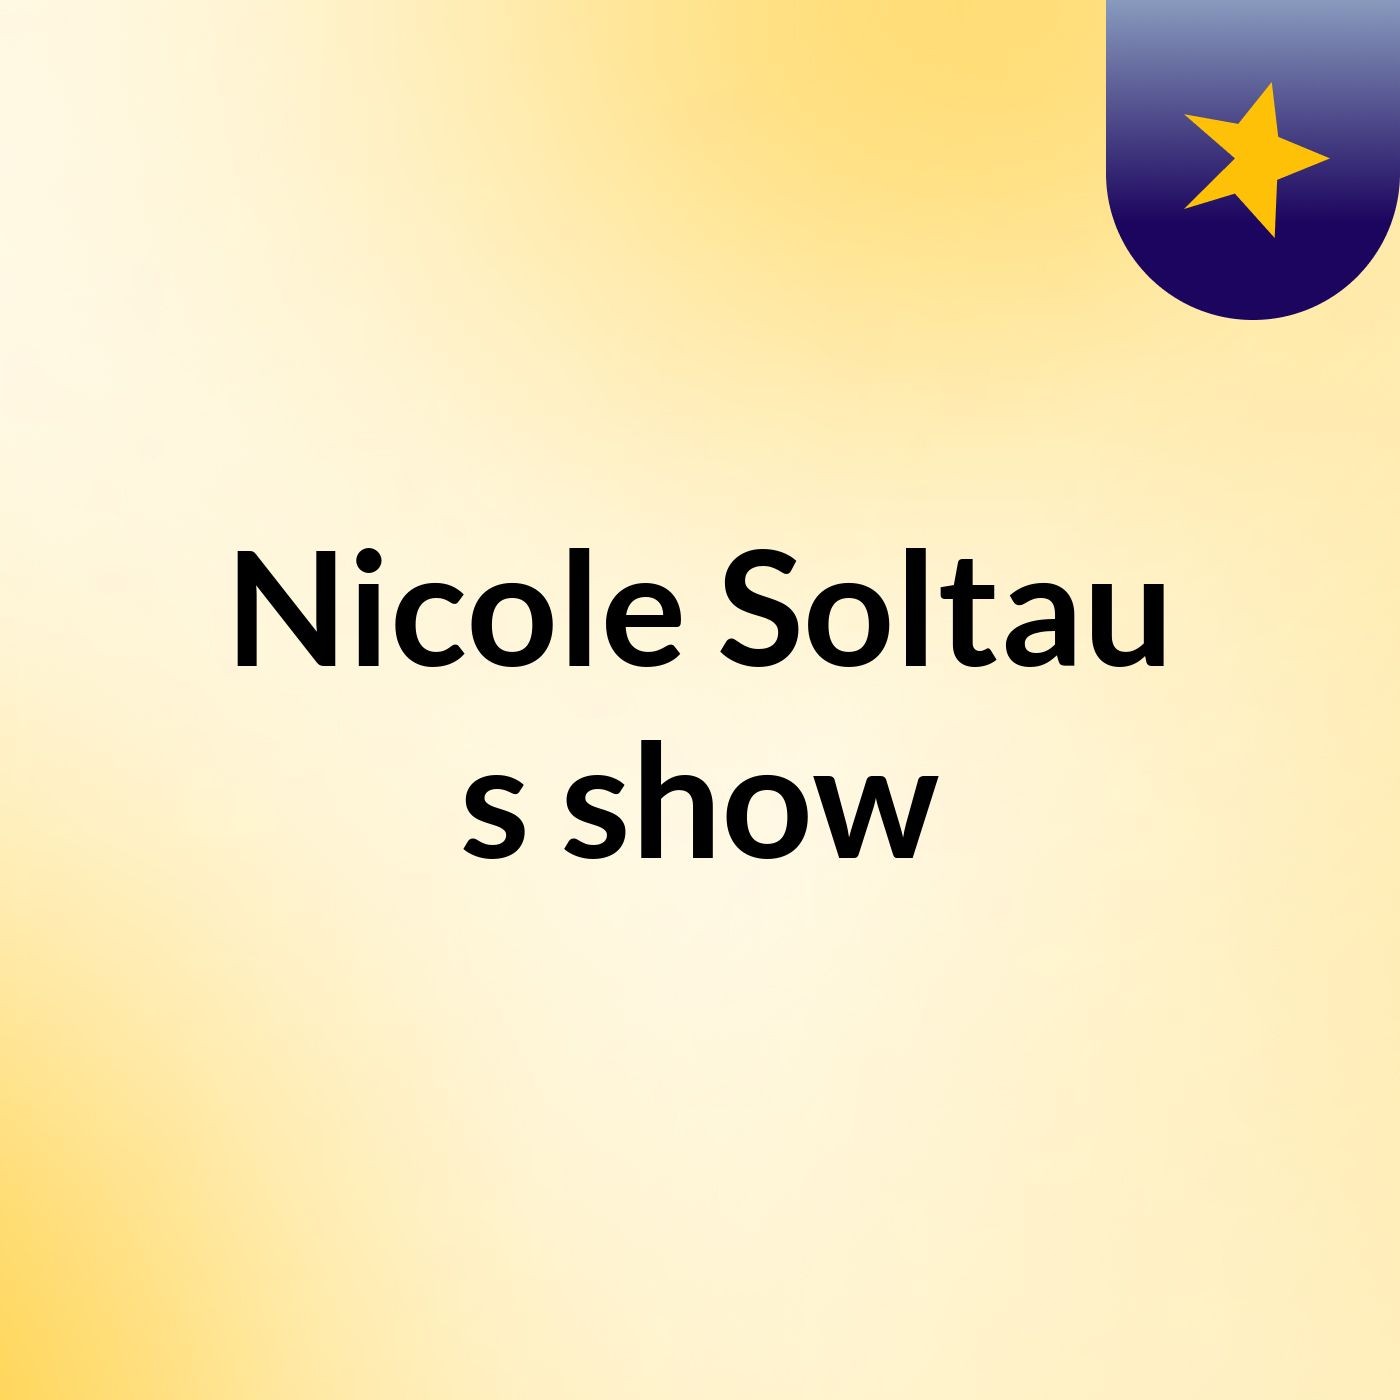 Nicole Soltau's show